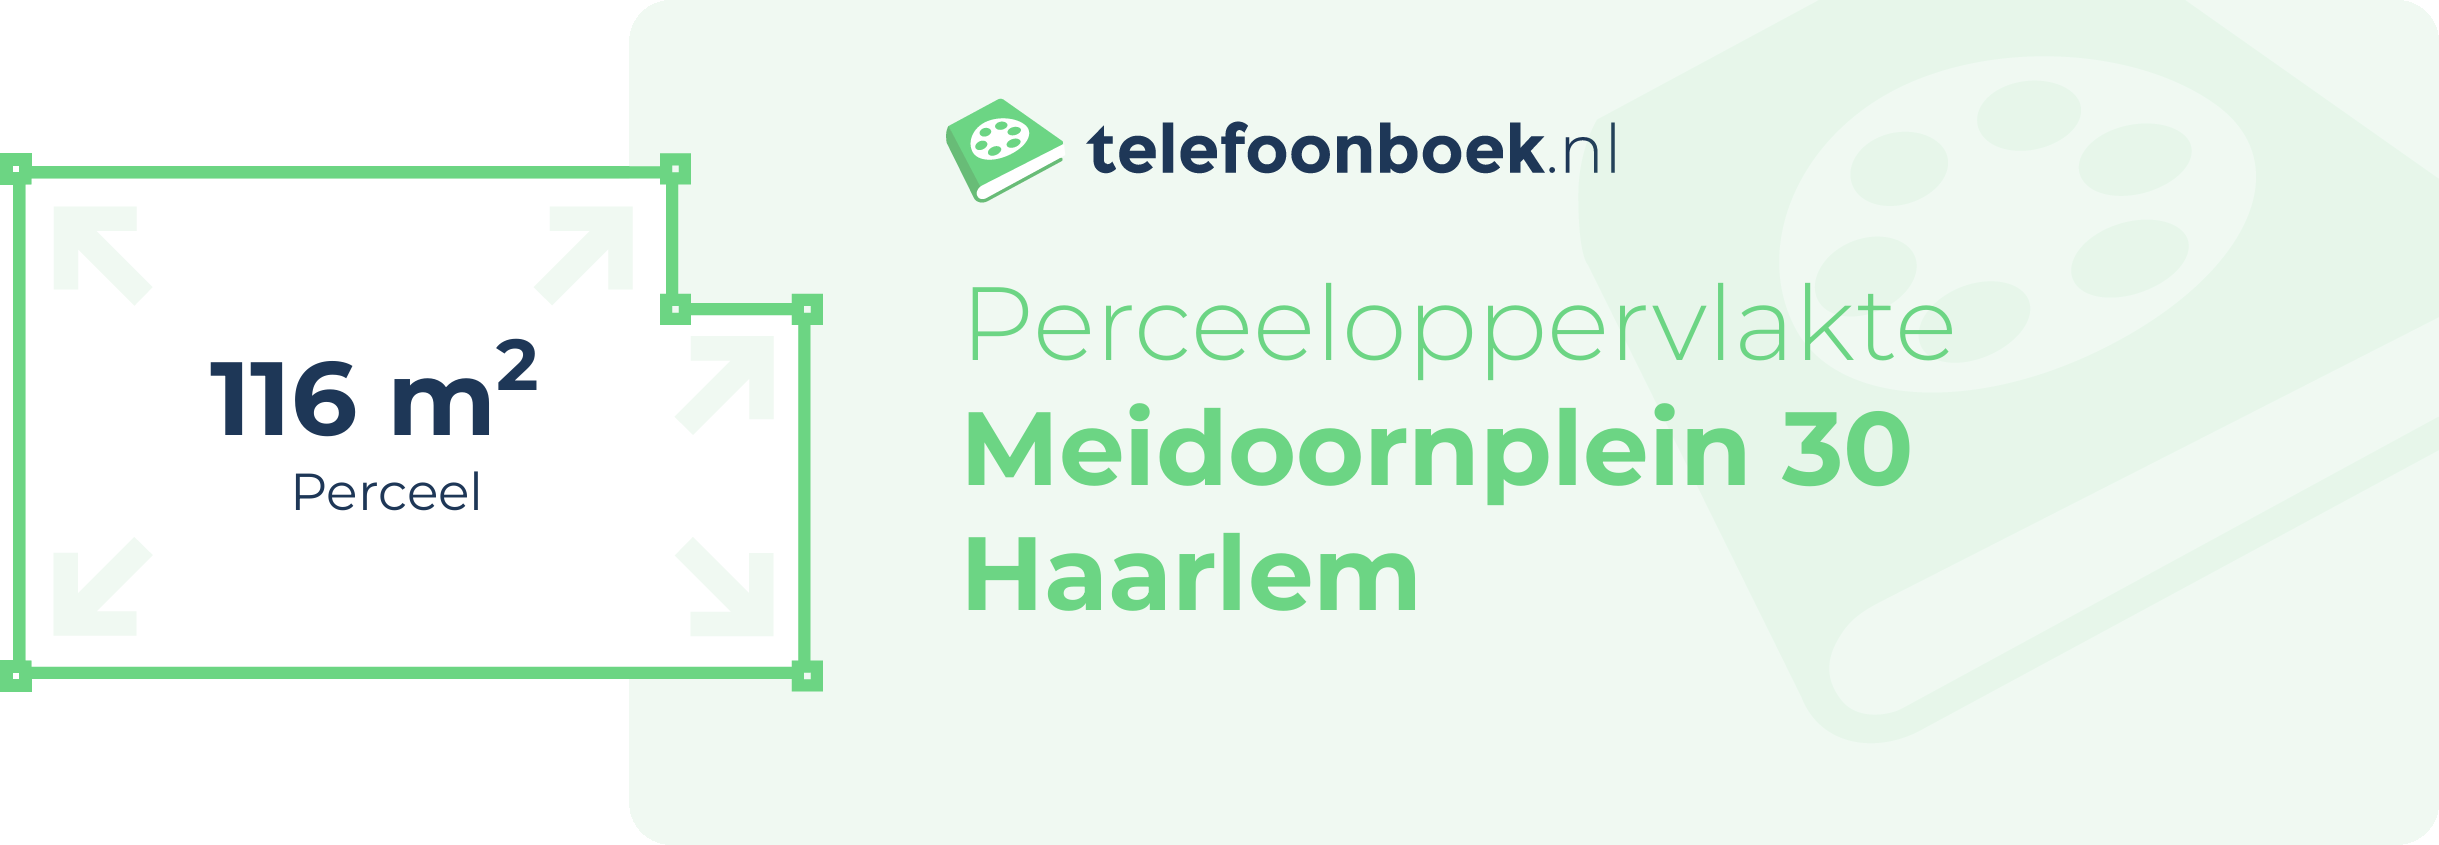 Perceeloppervlakte Meidoornplein 30 Haarlem